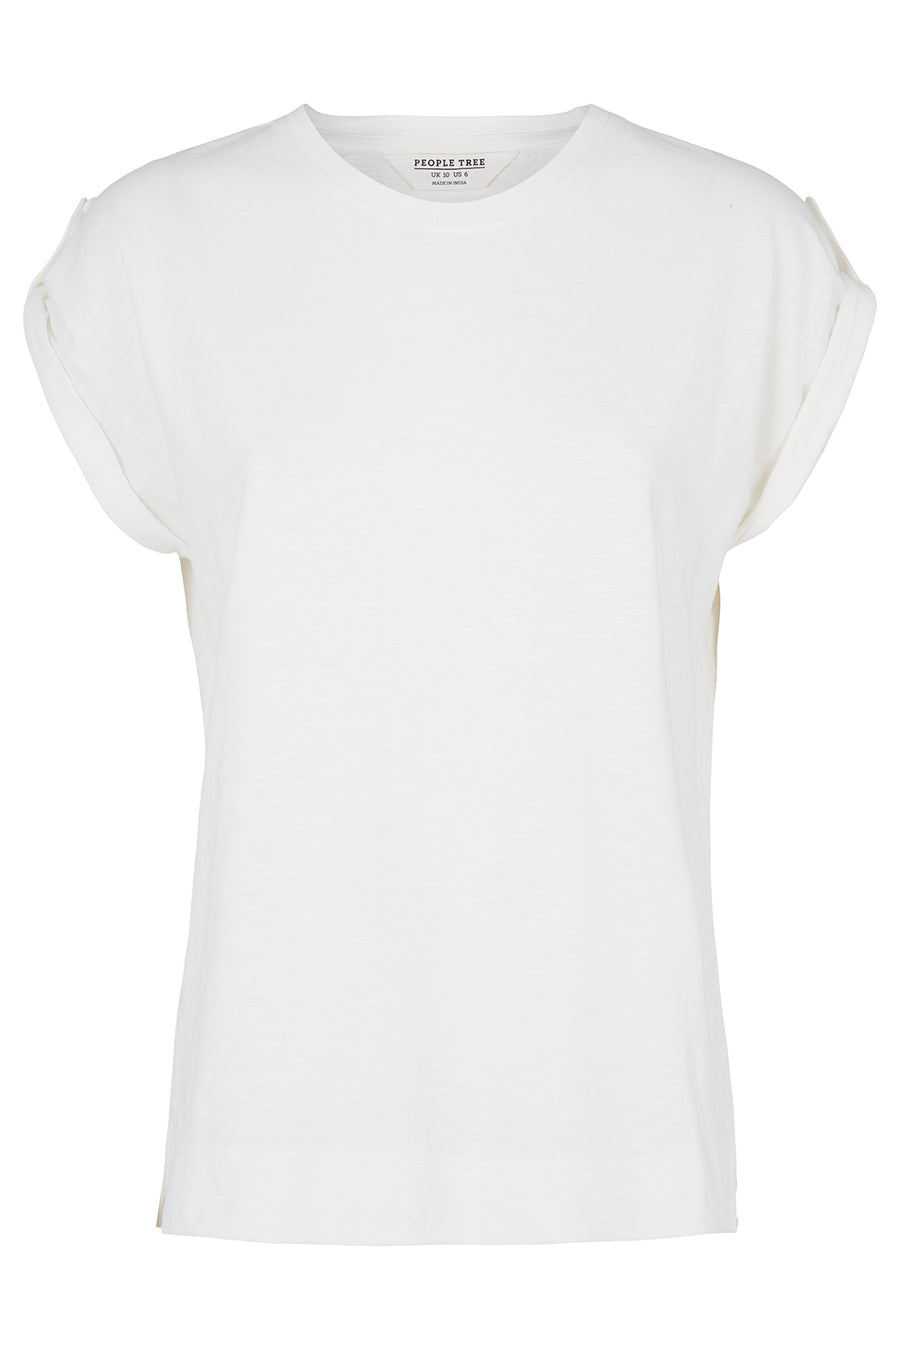 Jayne luomupuuvilla T-paita, valkoinen